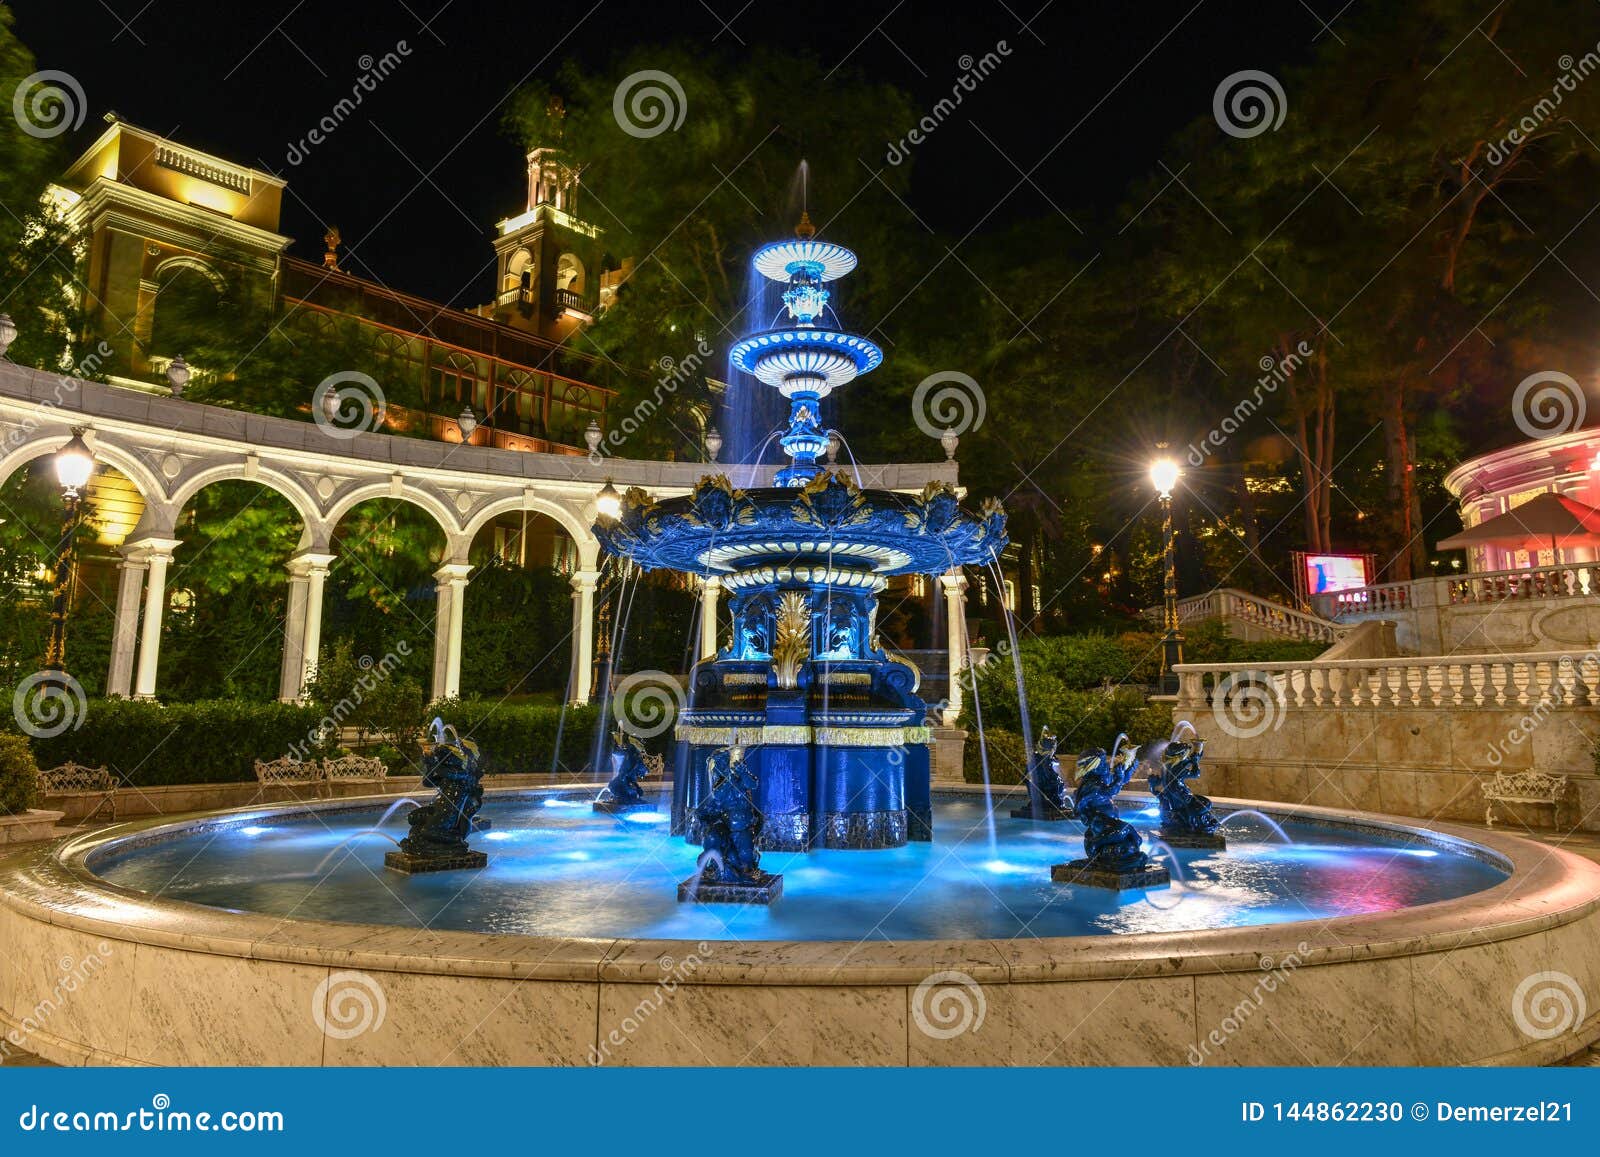 philharmonic fountain park - baku, azerbaijan